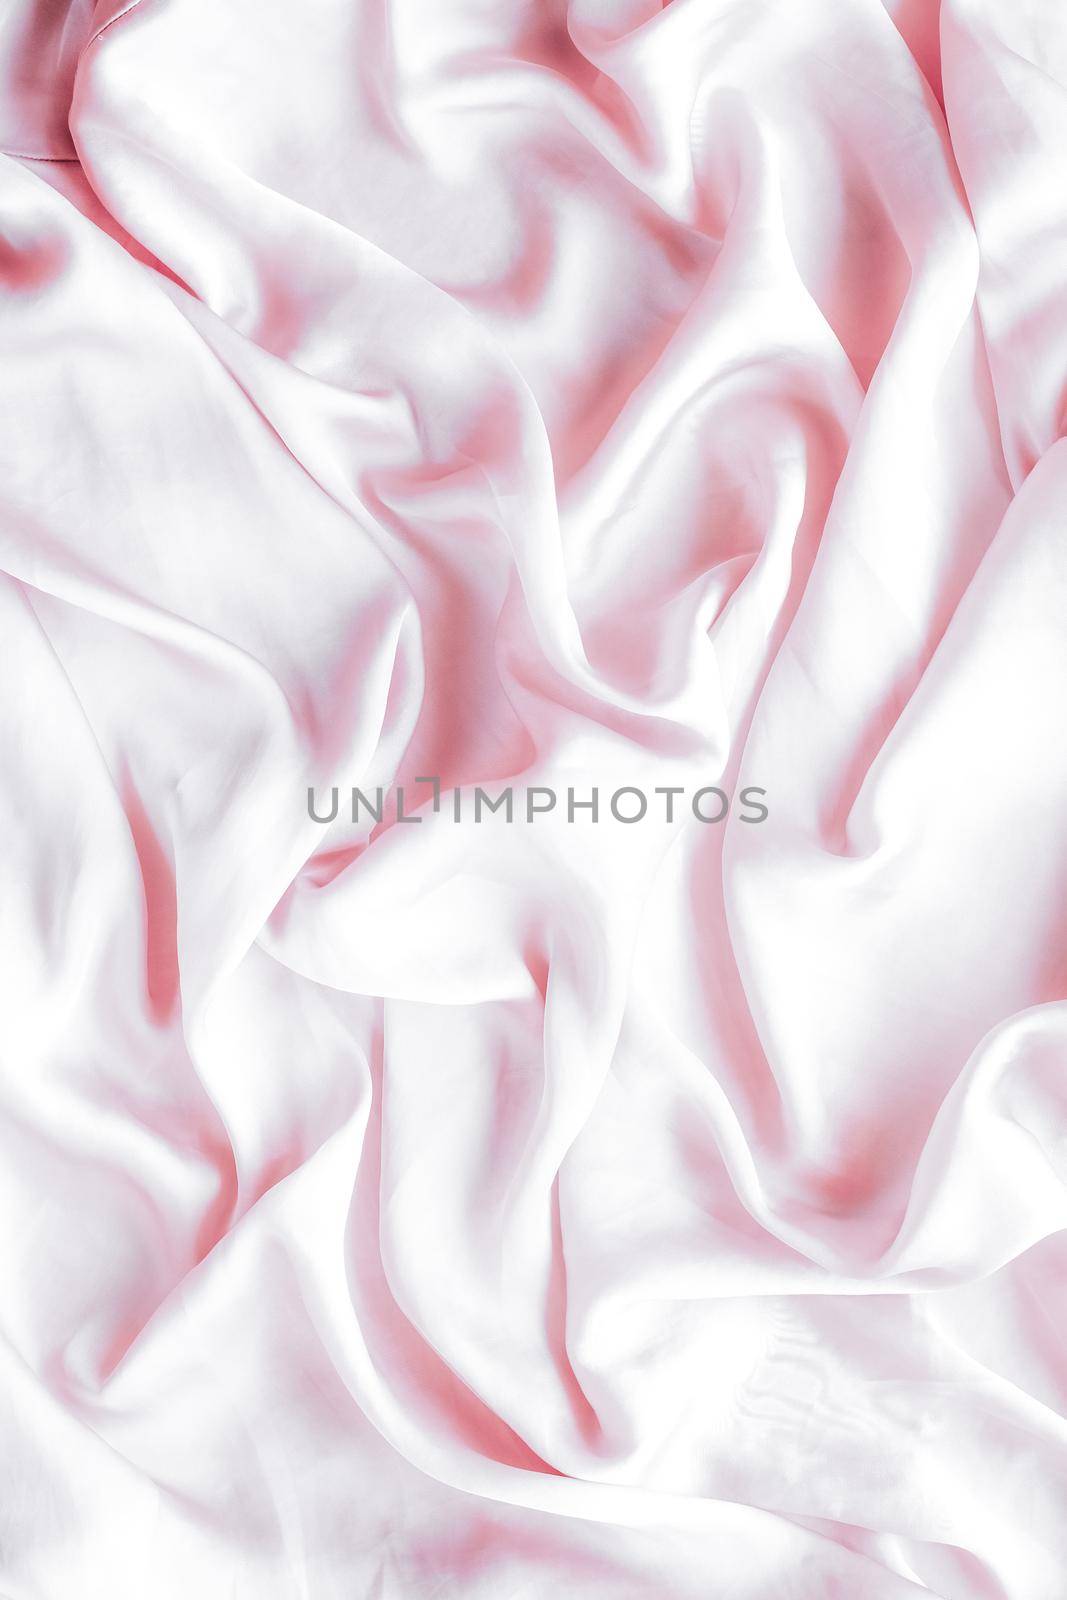 Pink soft silk texture, flatlay background by Anneleven